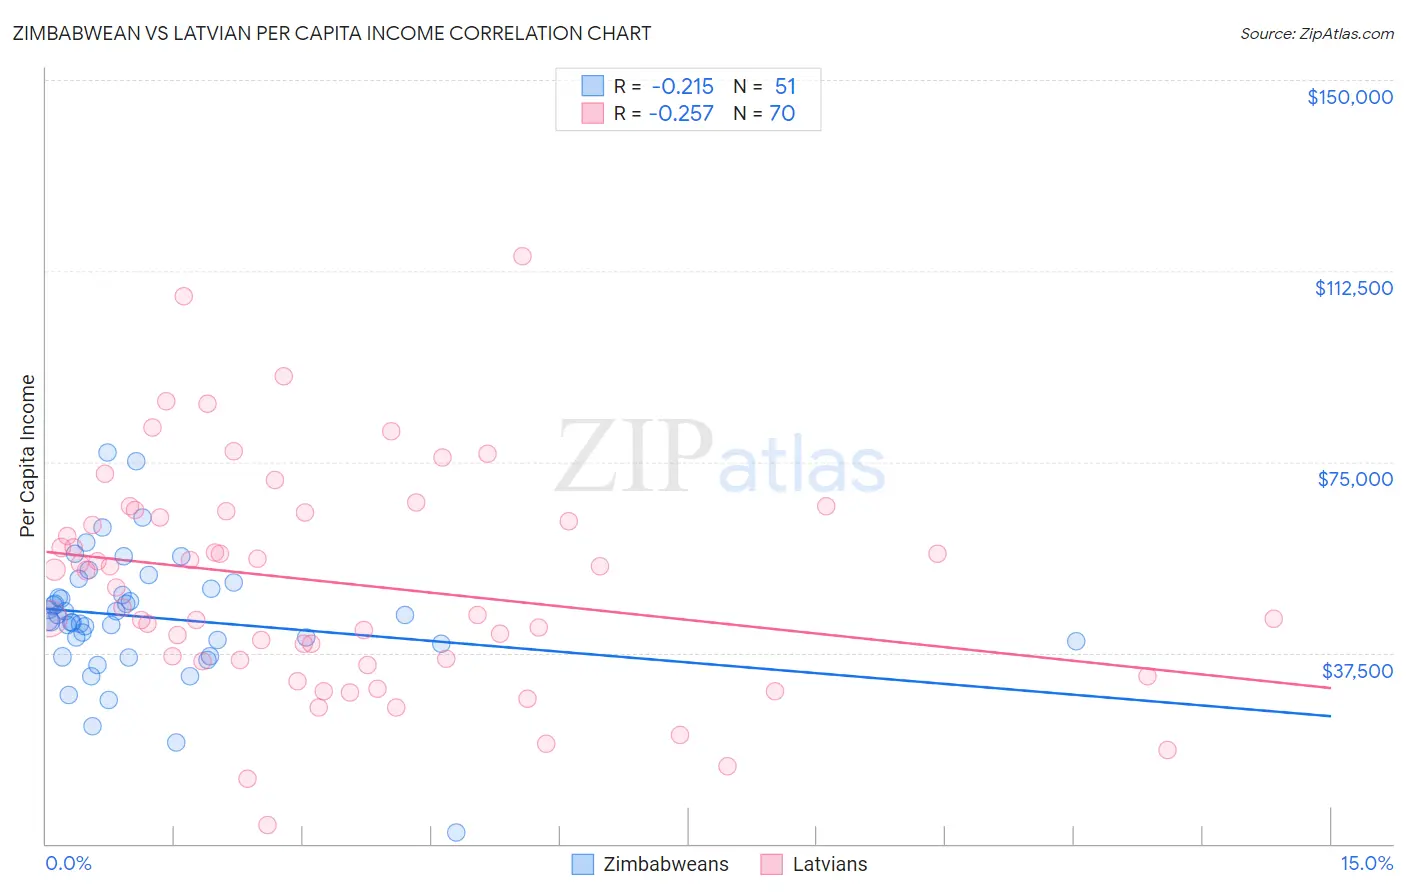 Zimbabwean vs Latvian Per Capita Income